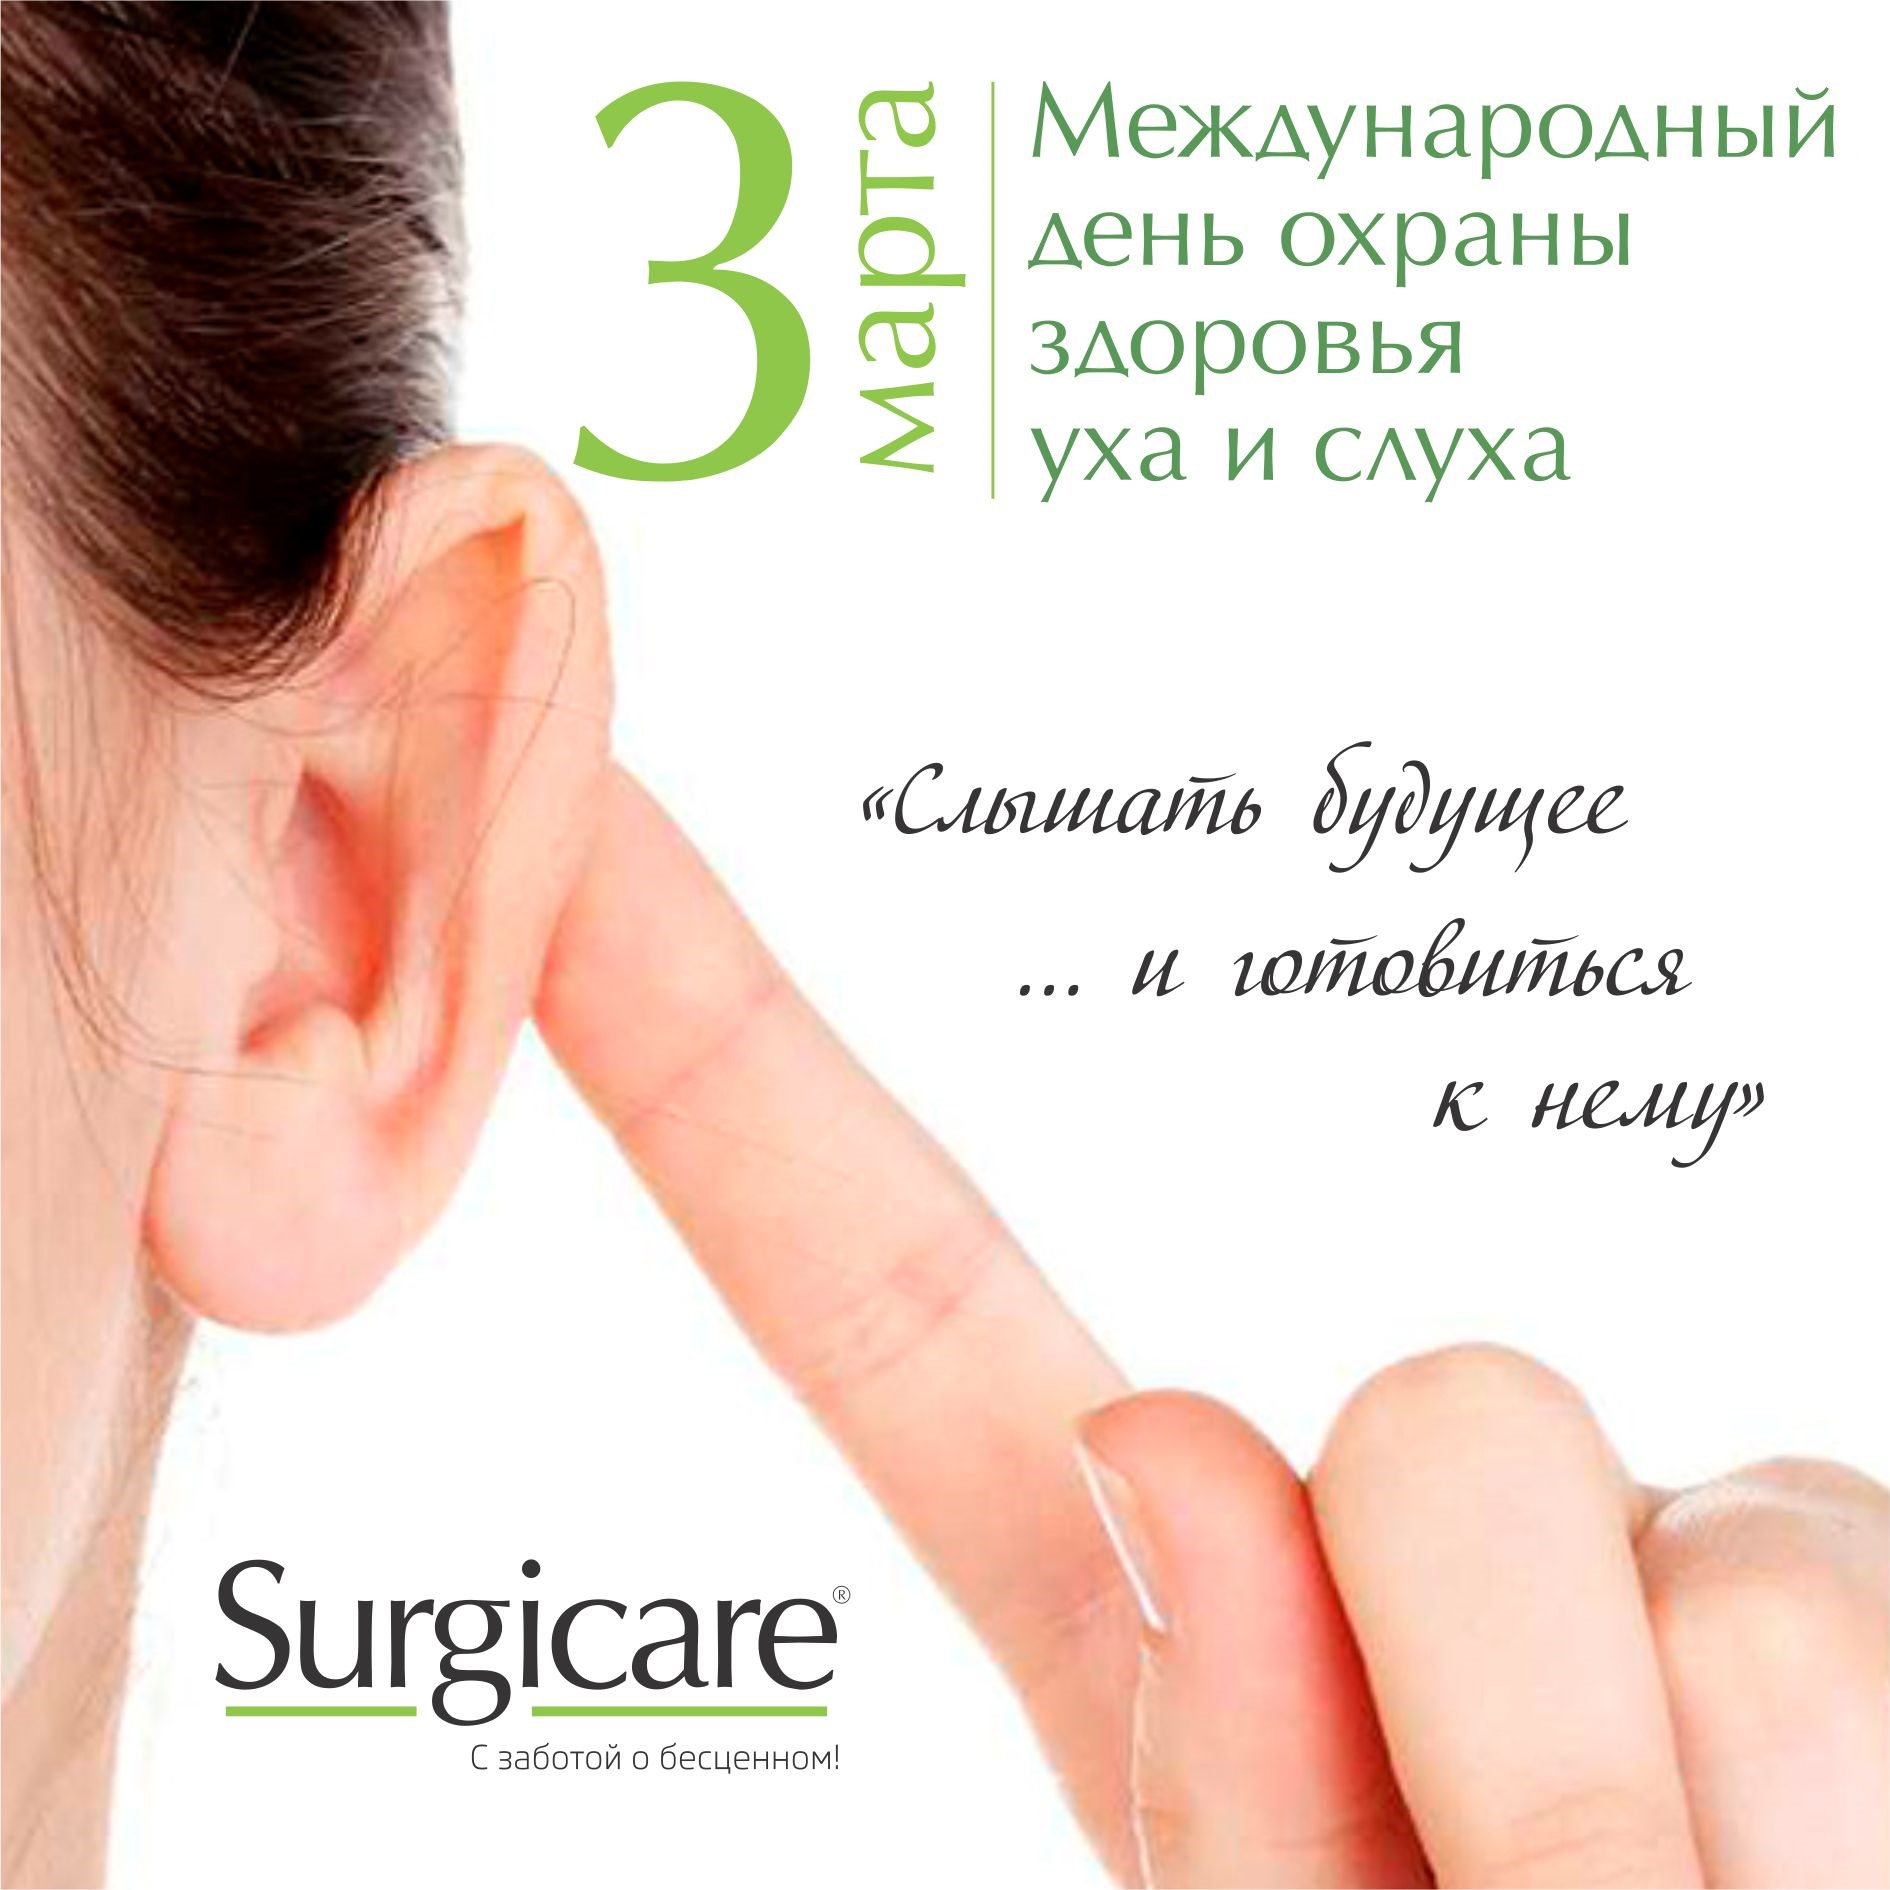 «Международный день охраны здоровья уха и слуха»